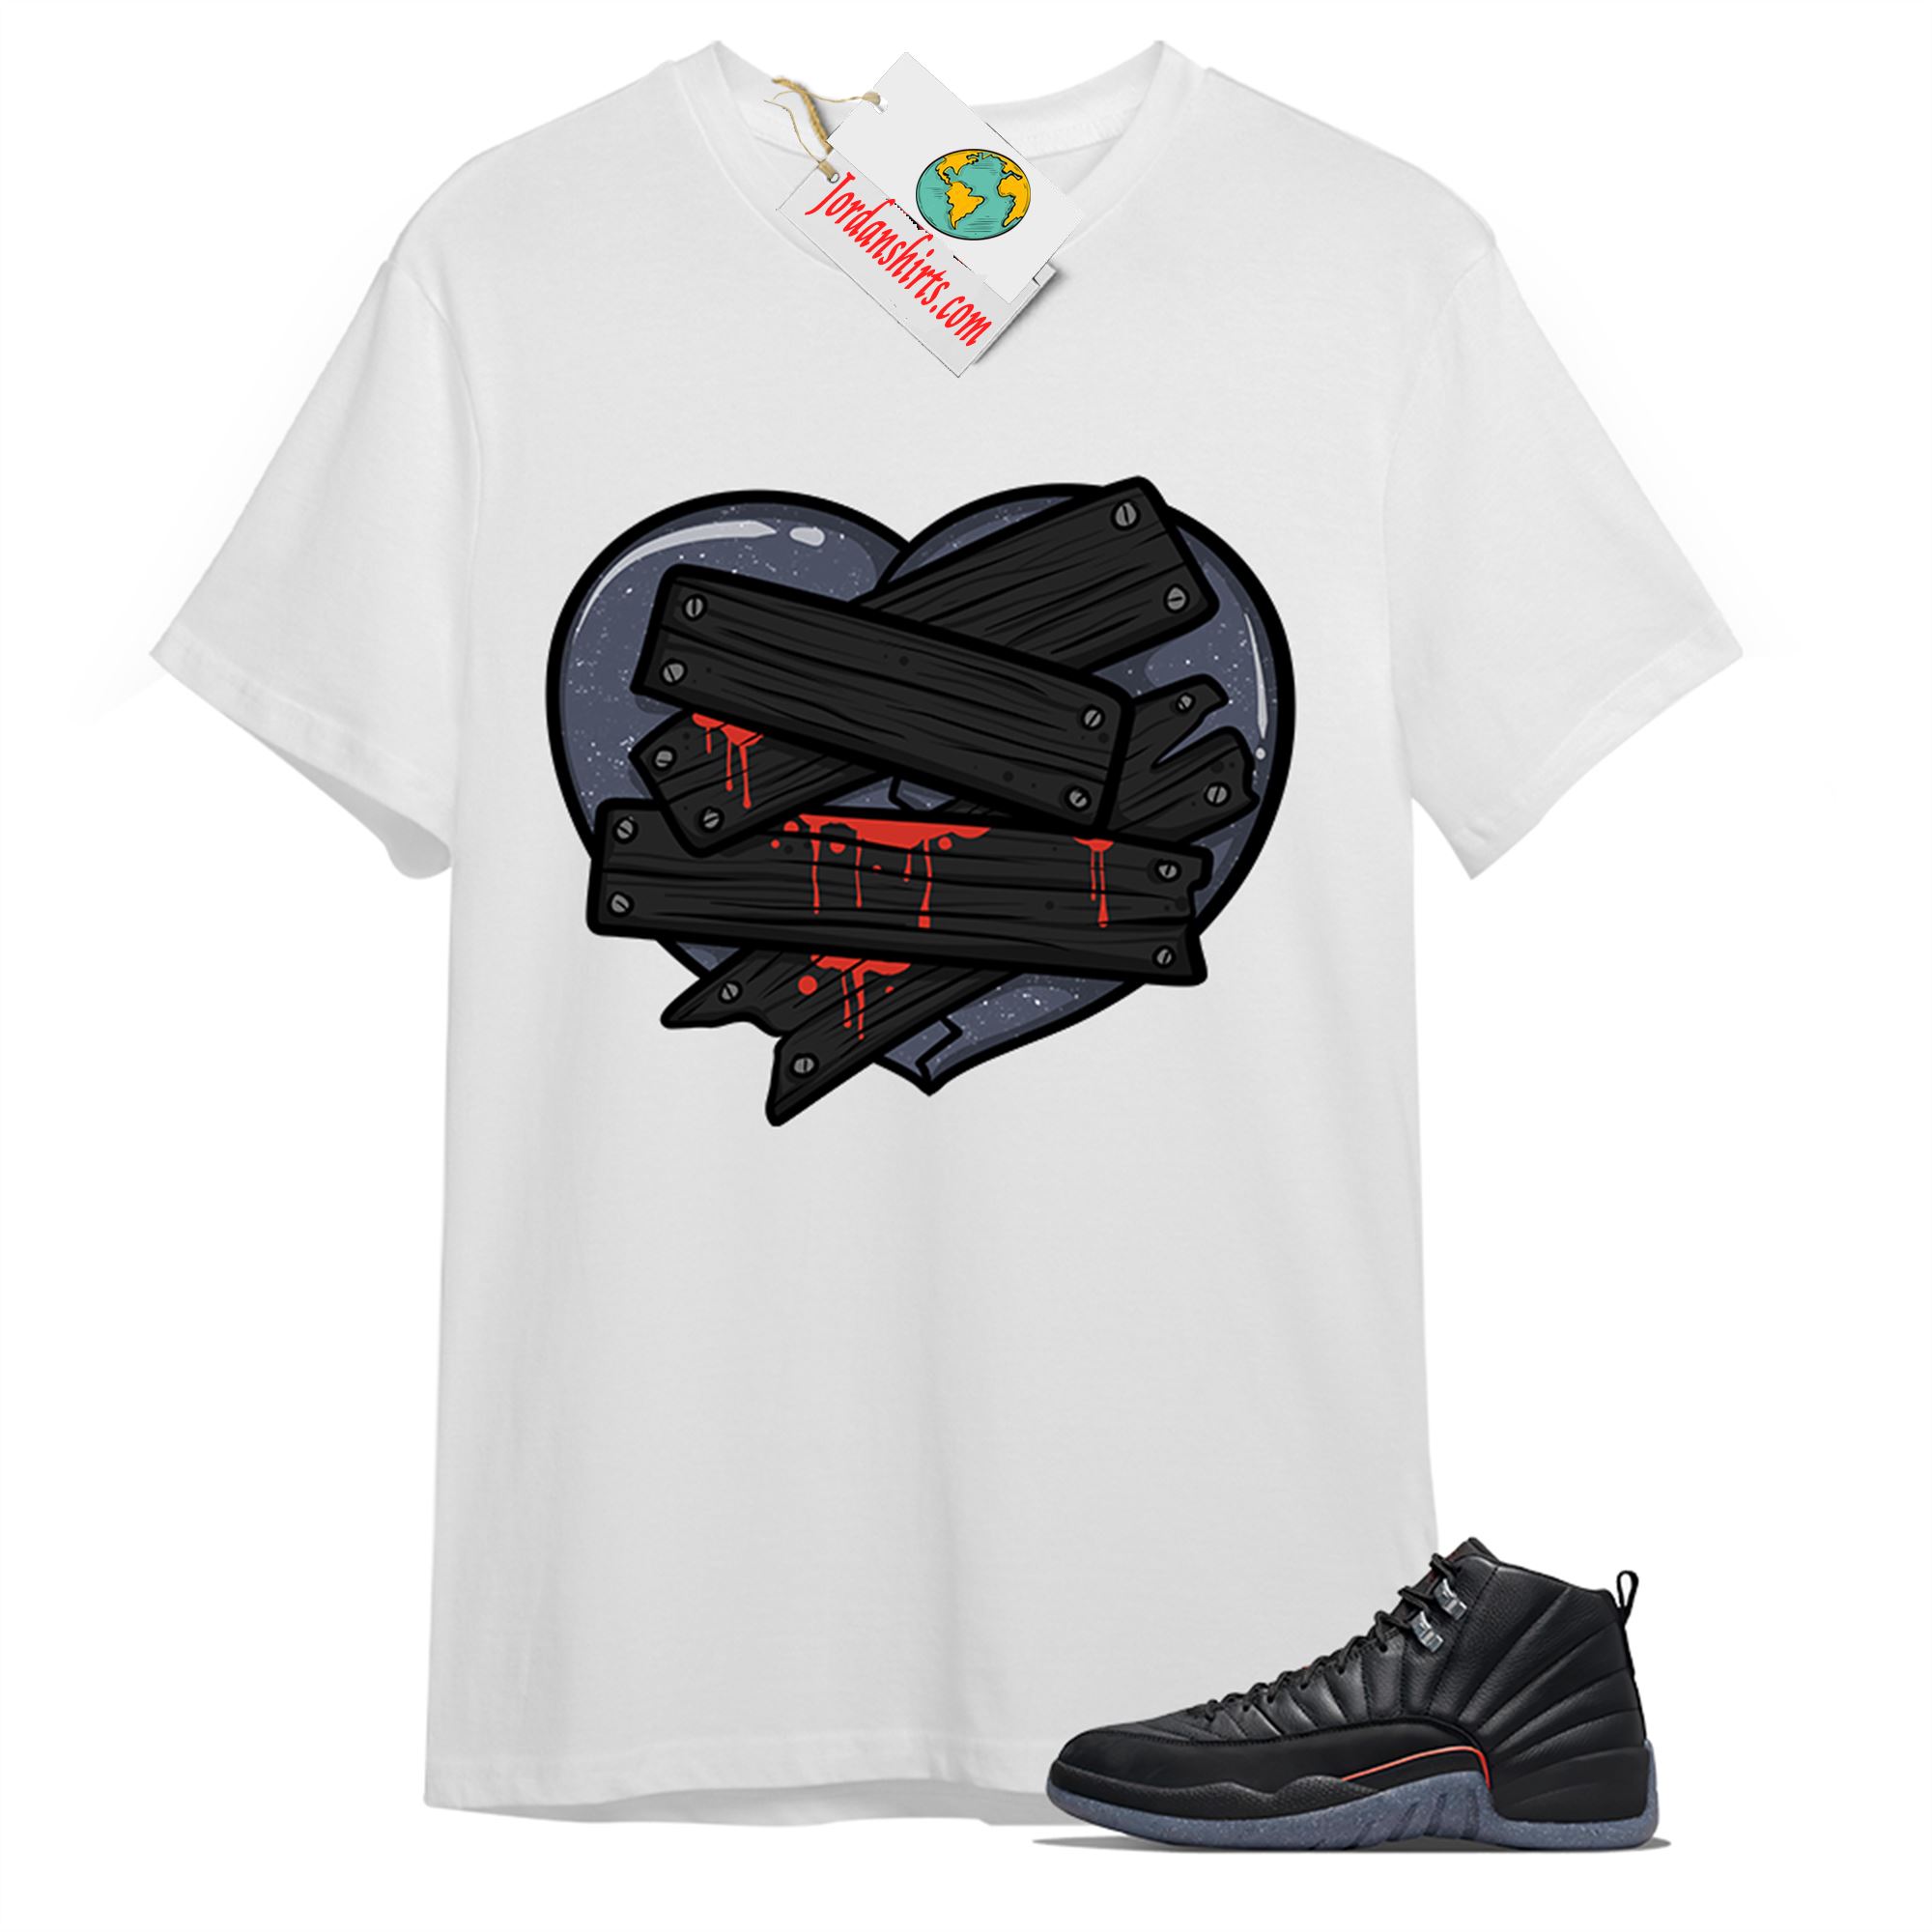 Jordan 12 Shirt, Patch Love Broken Heart White T-shirt Air Jordan 12 Utility Grind 12s Size Up To 5xl